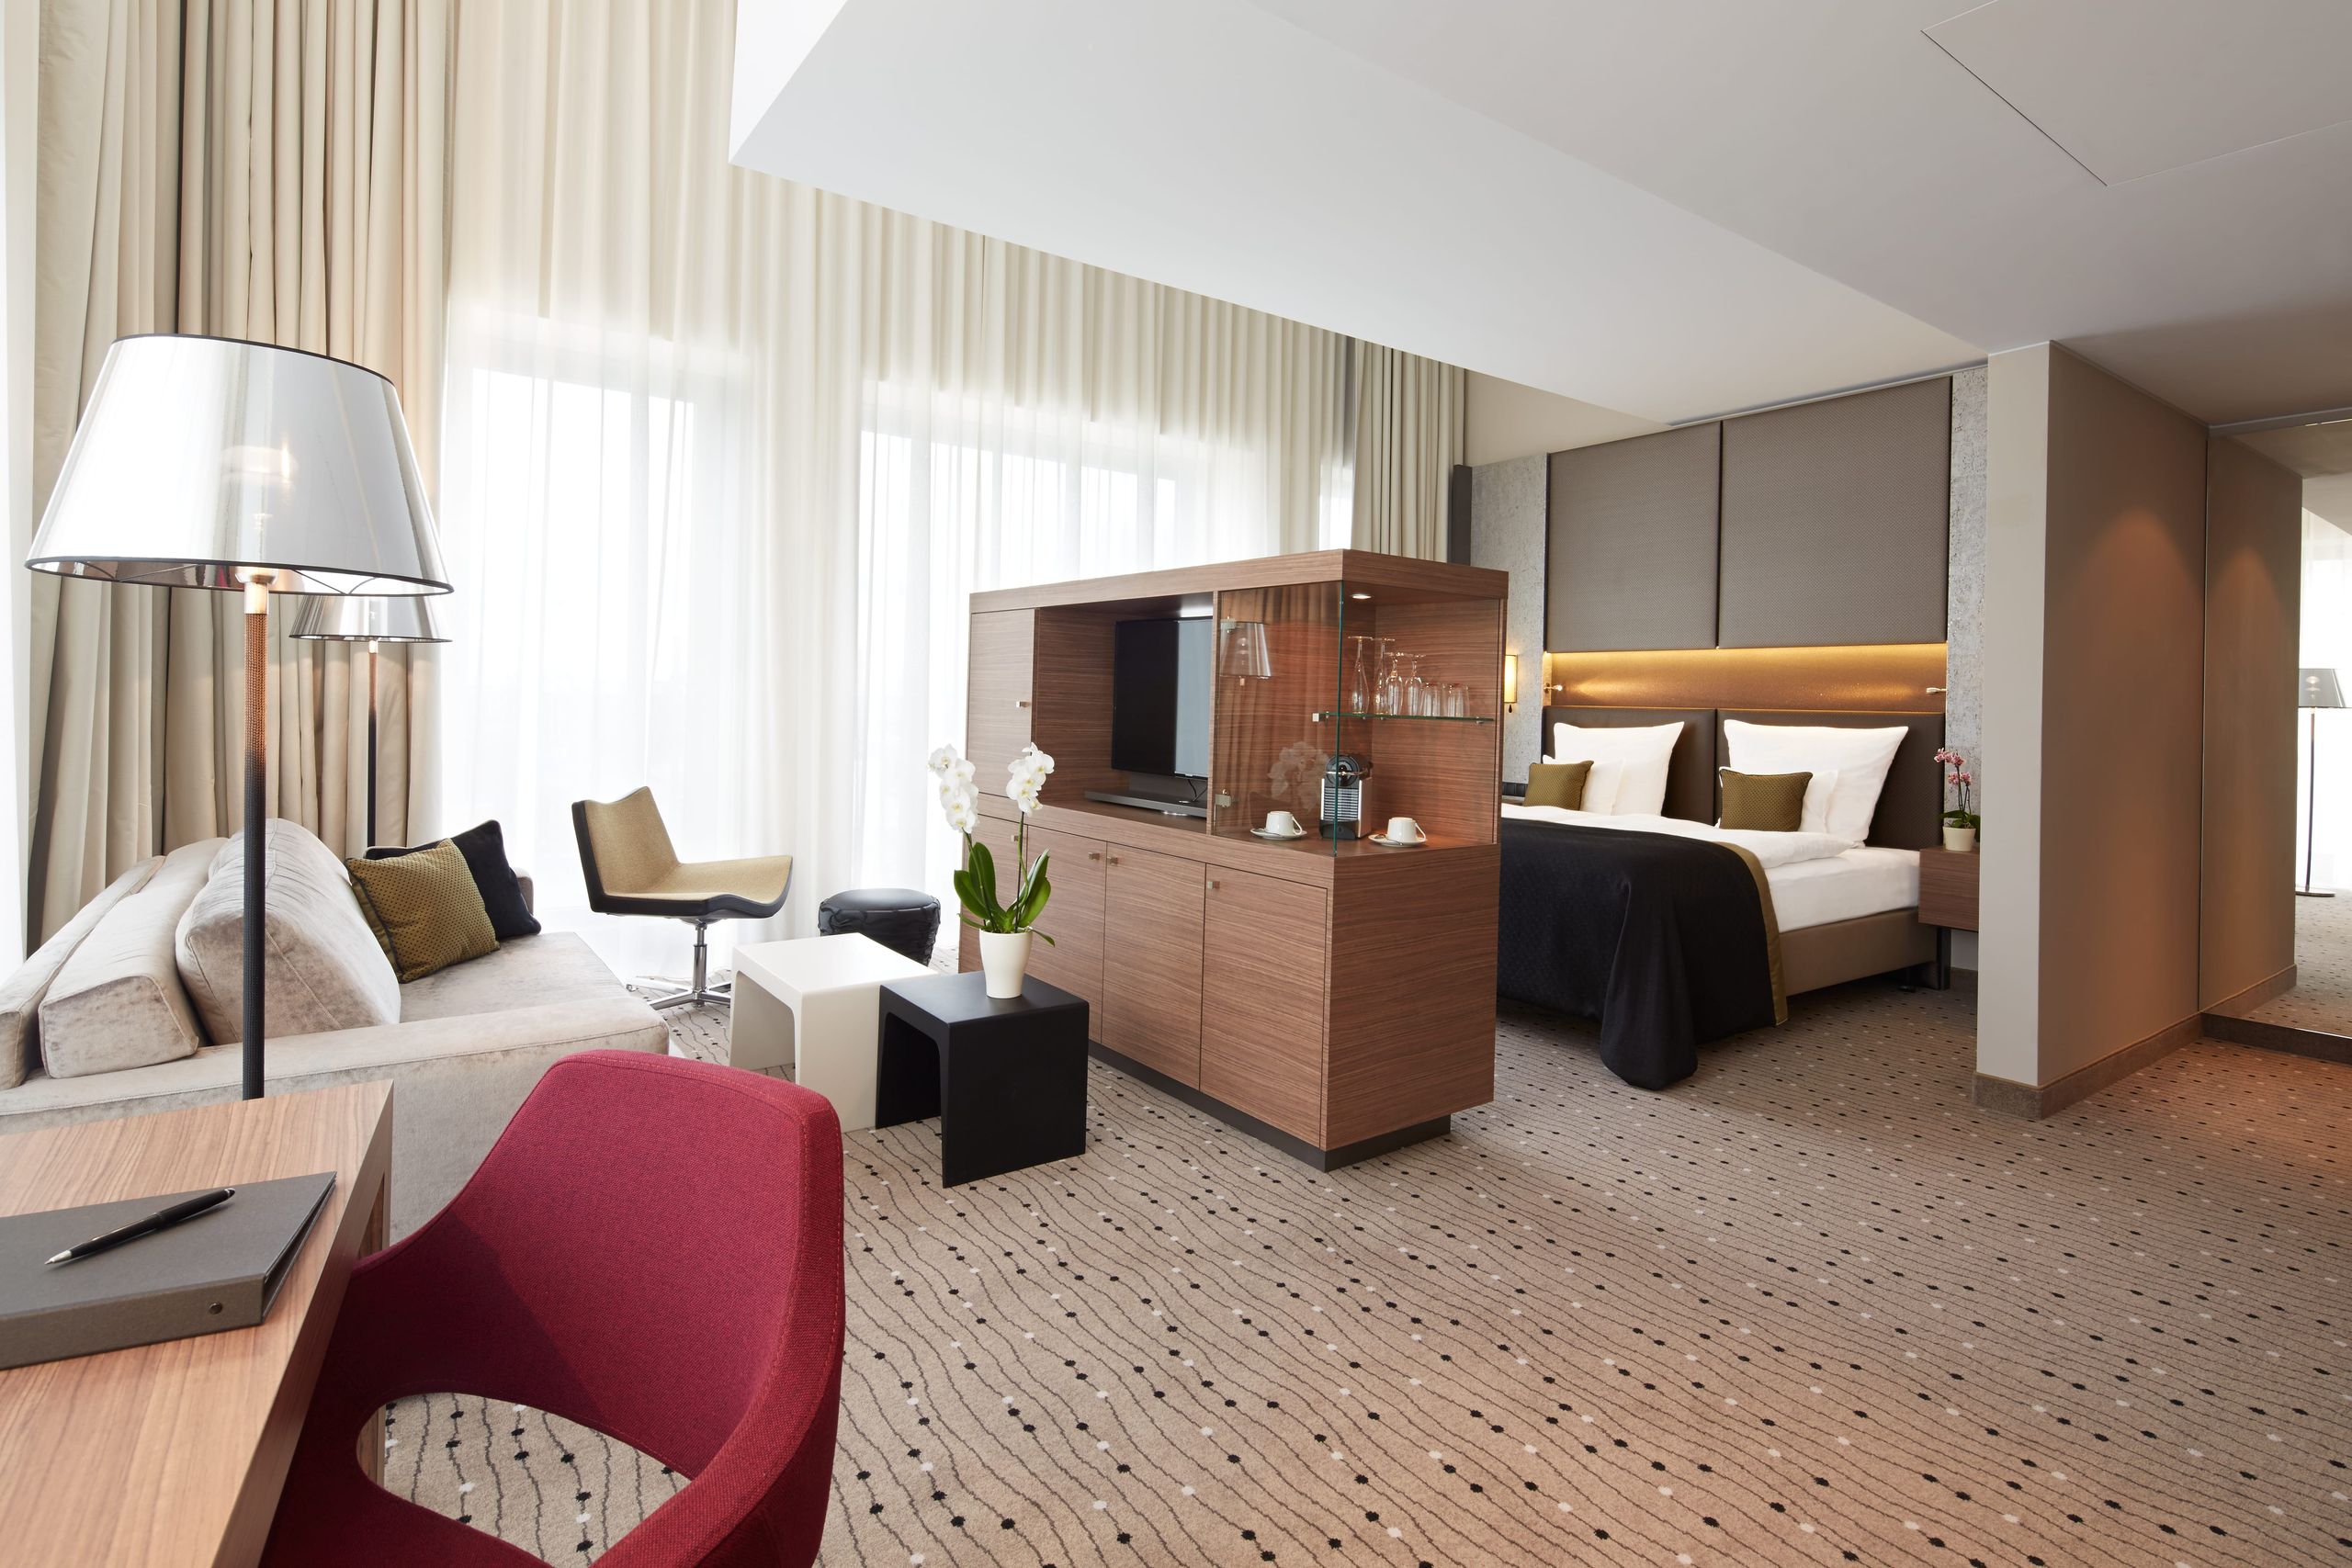 Steigenberger Hotel Am Kanzleramt - Berlin - Junior suite